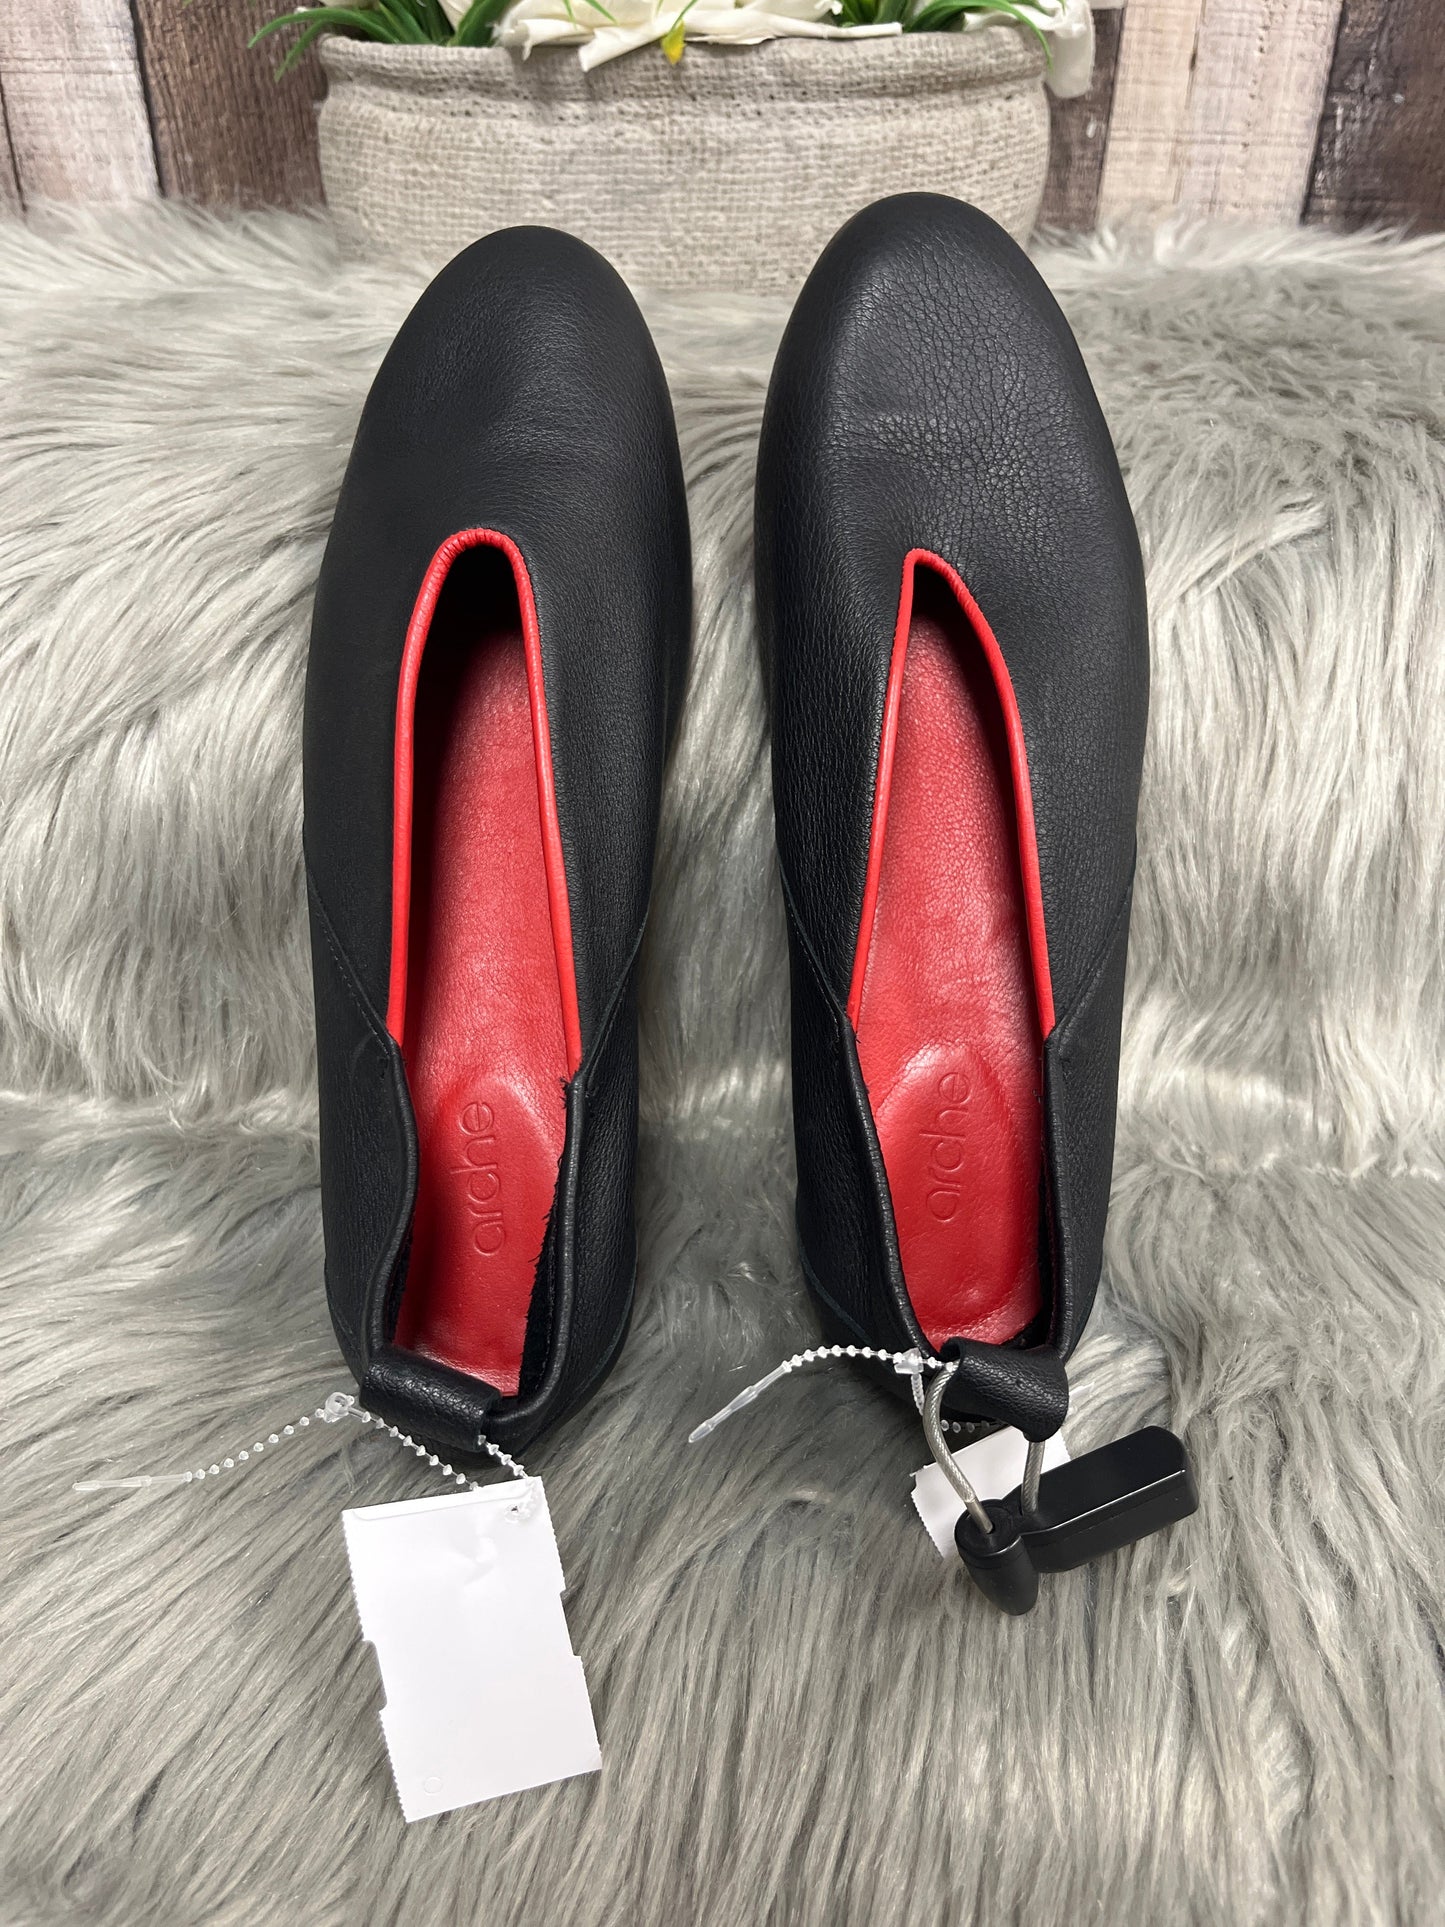 Black Shoes Flats Cmc, Size 8